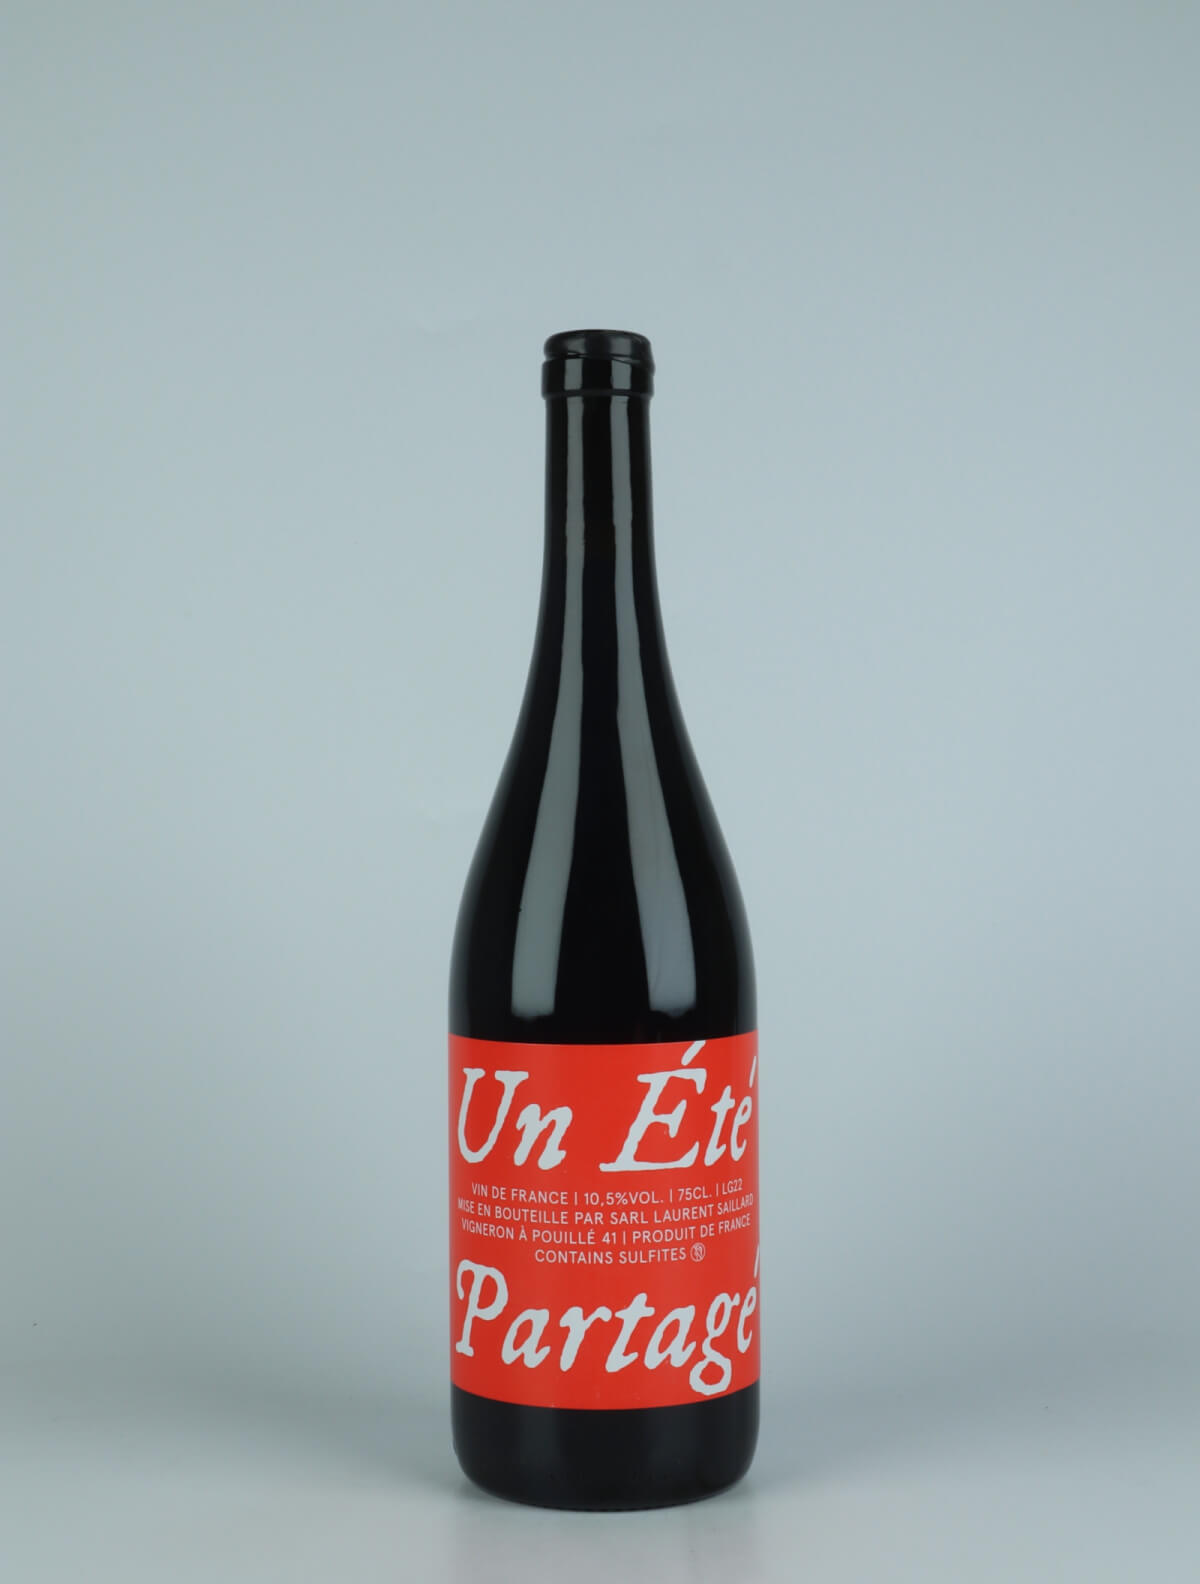 A bottle 2022 Un Été Partagé Red wine from Laurent Saillard, Loire in France